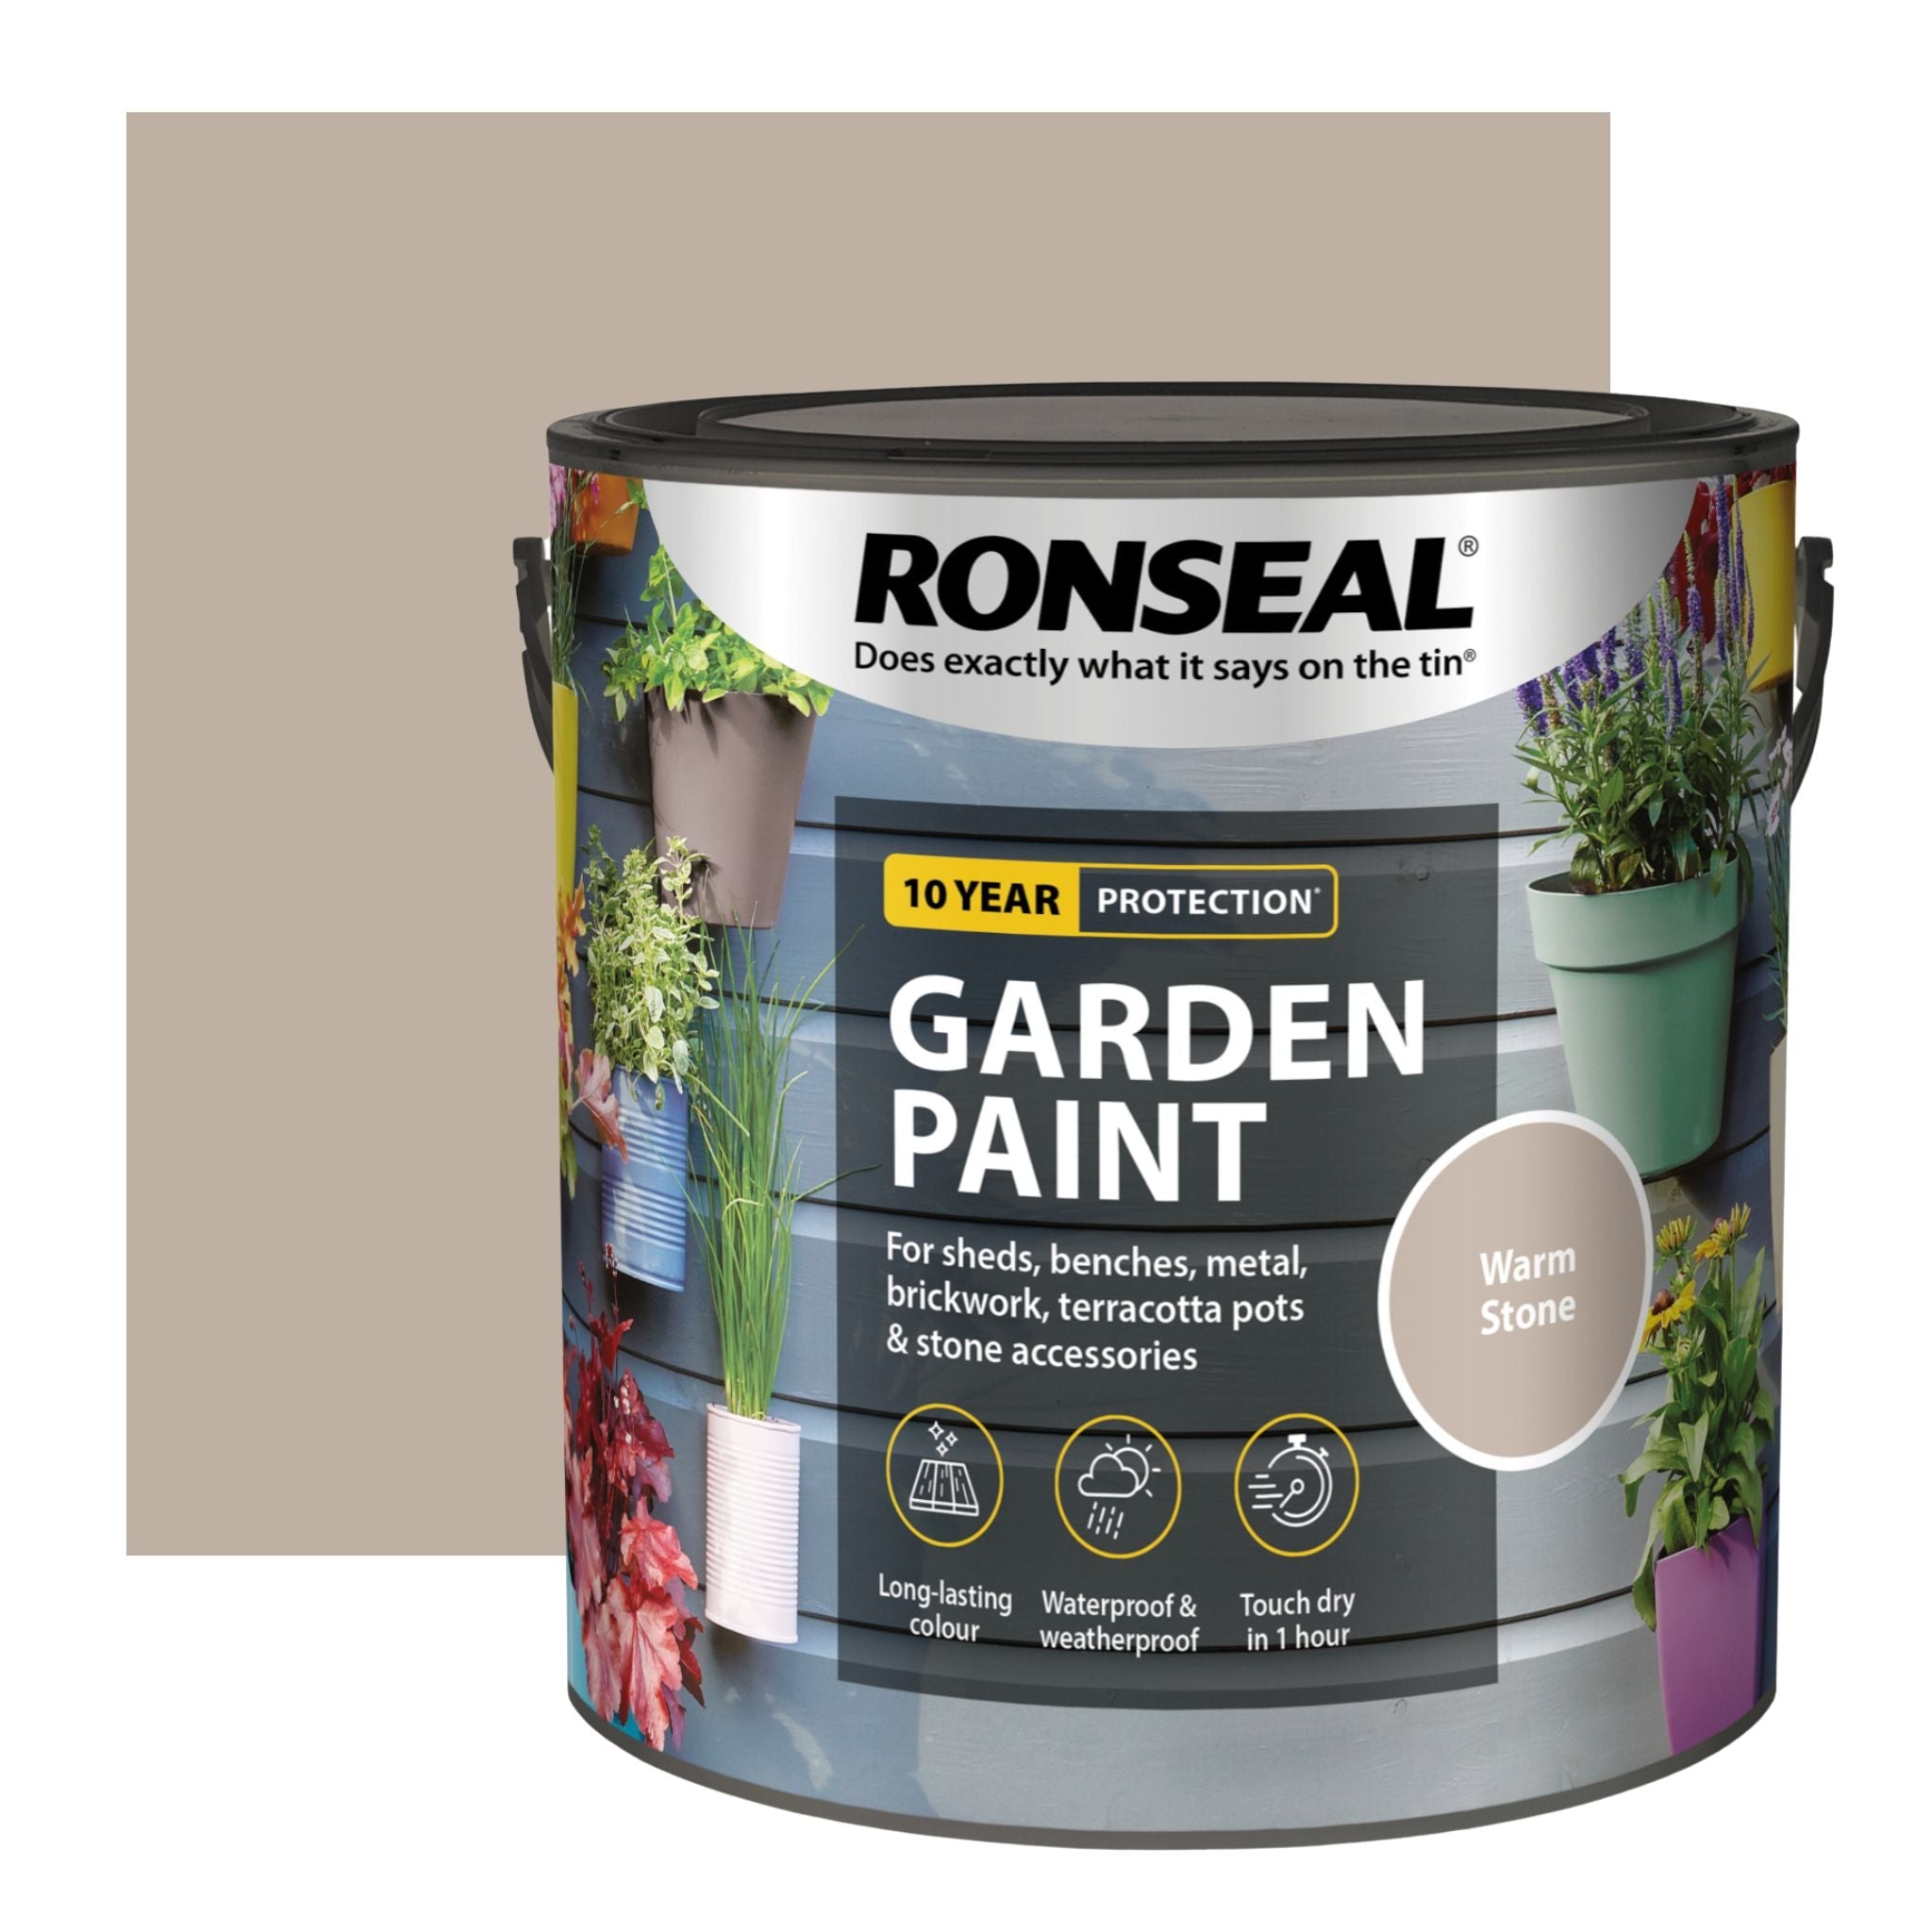 Ronseal Garden Paint - Restorate-5010214885152